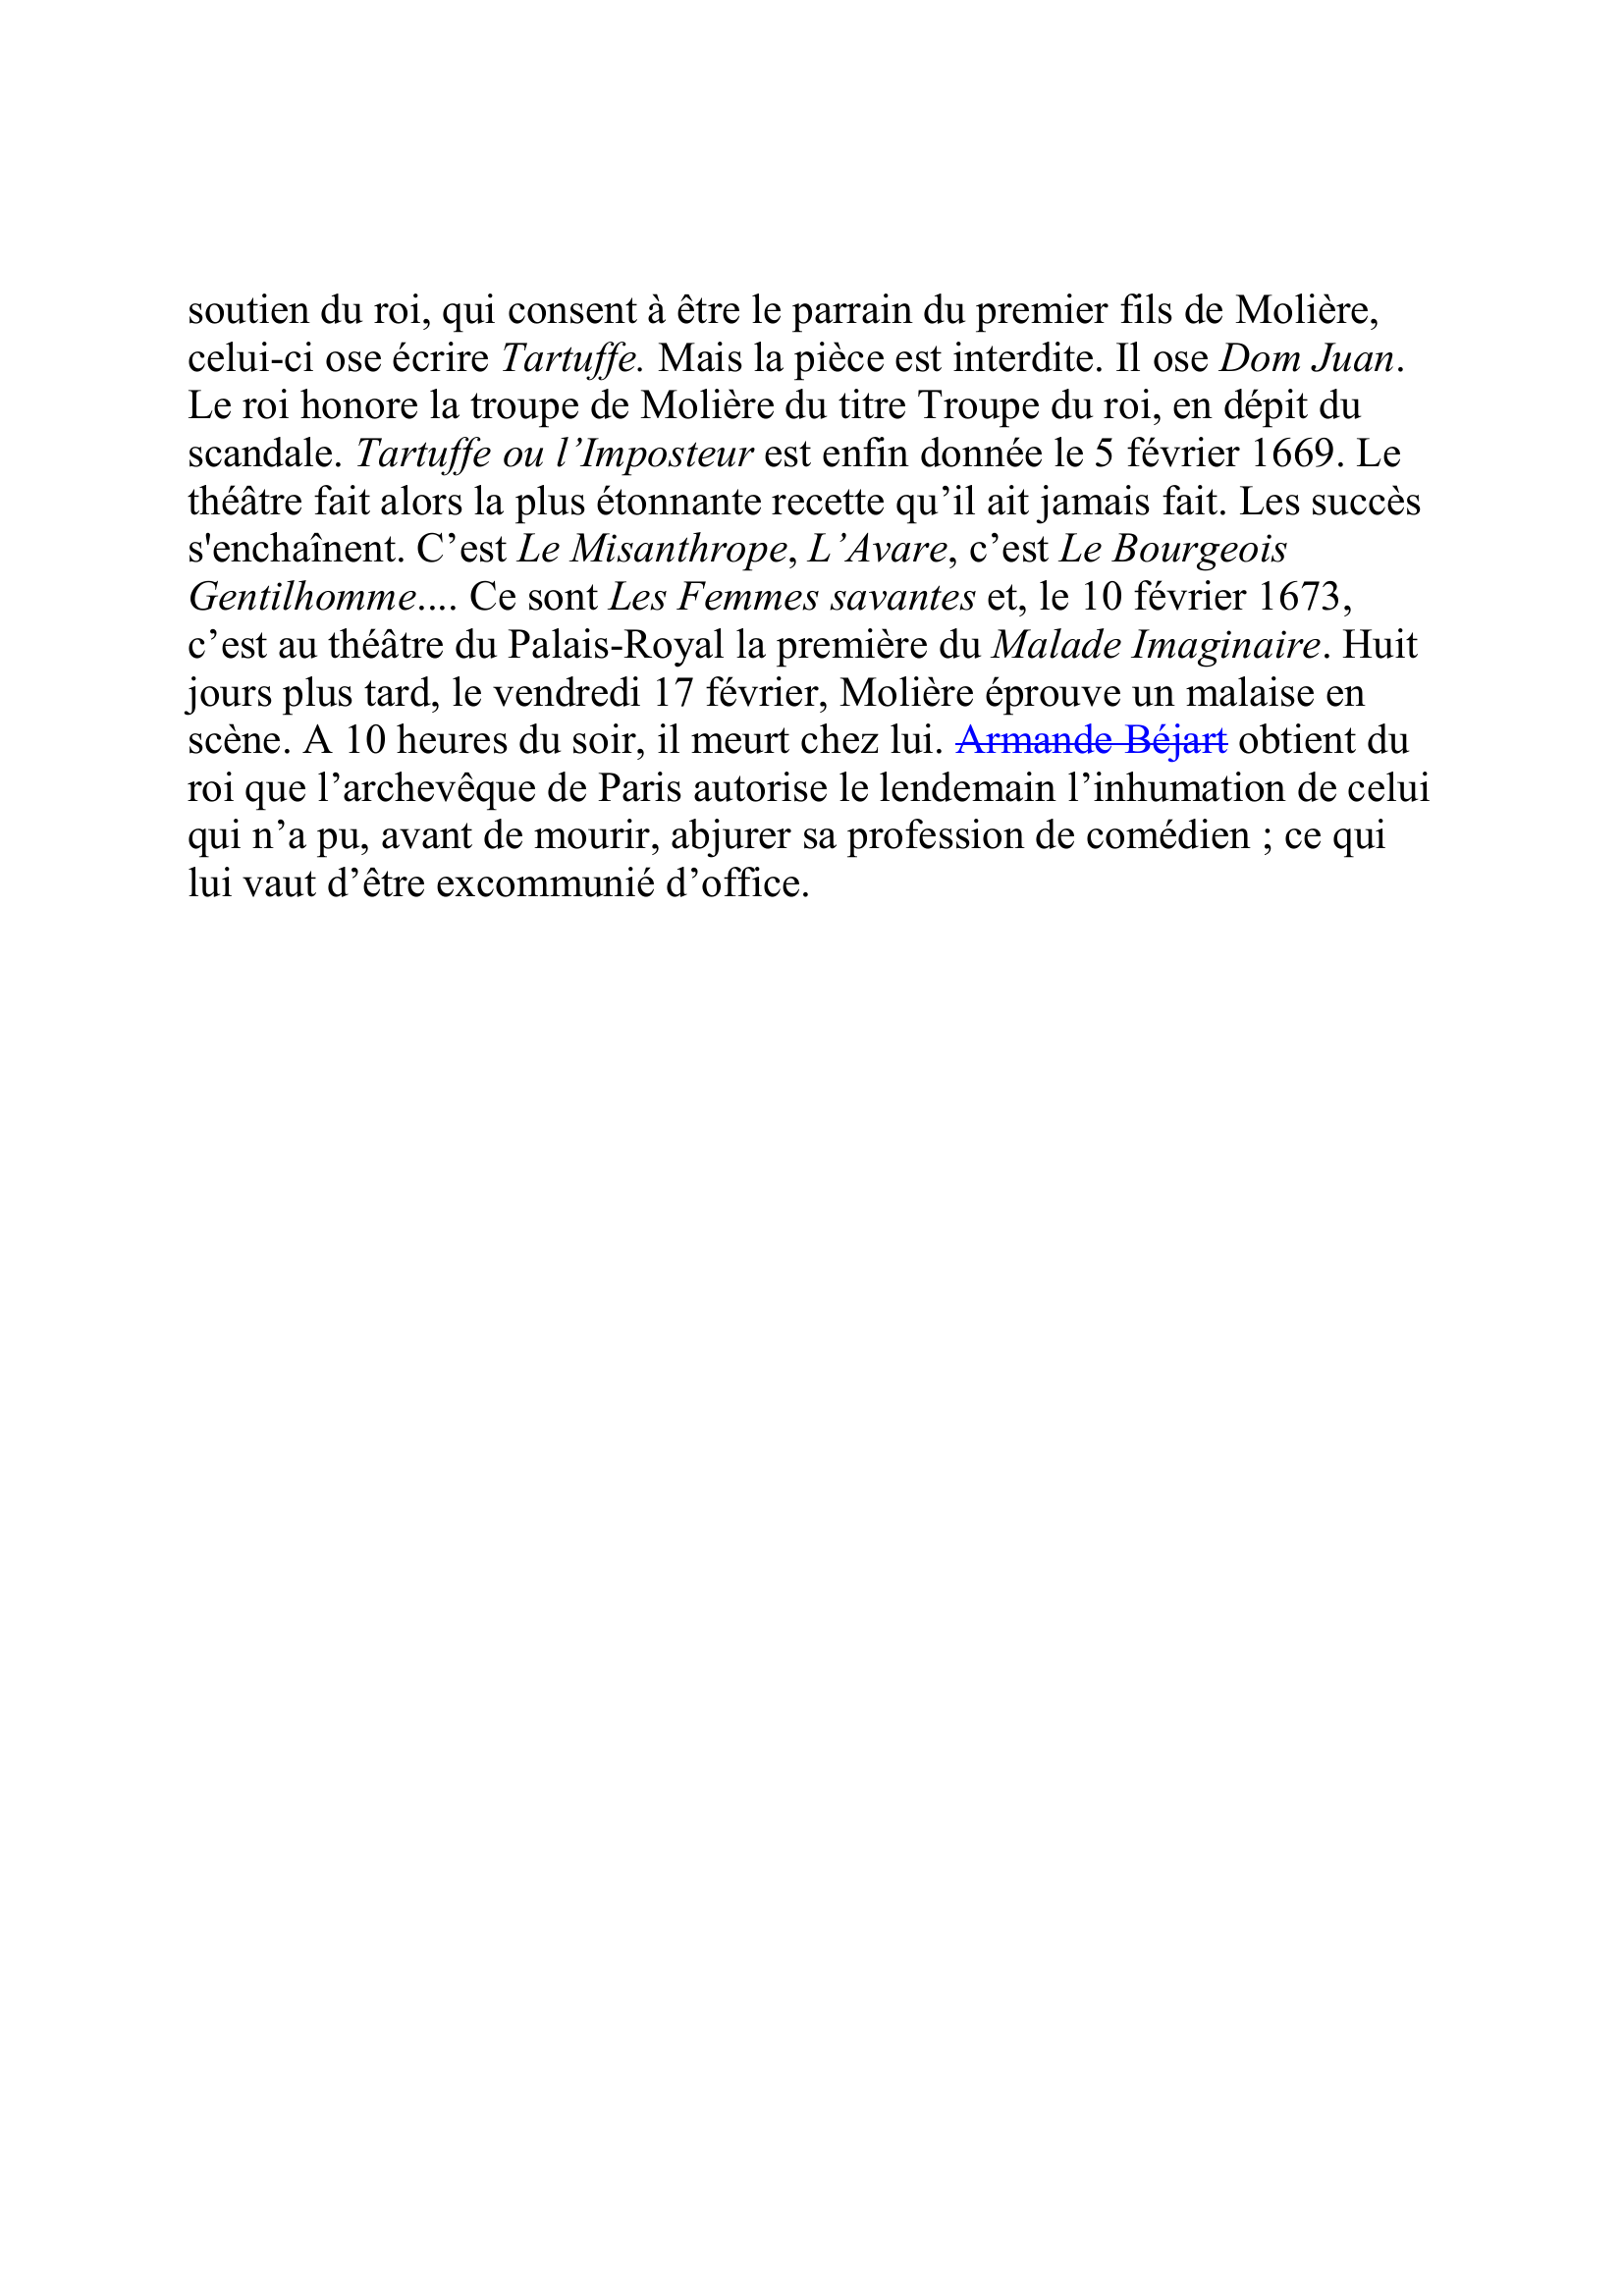 Prévisualisation du document MOLIERE, Jean-Baptiste Poquelin, dit 
(janvier 1622-17 février 1673) 
Auteur dramatique, comédien 
 
Jusqu'à dix-sept ans, Jean-Baptiste Poquelin mène ses études chez les jésuitesK109 de l'important collège de Clermont, à Paris.